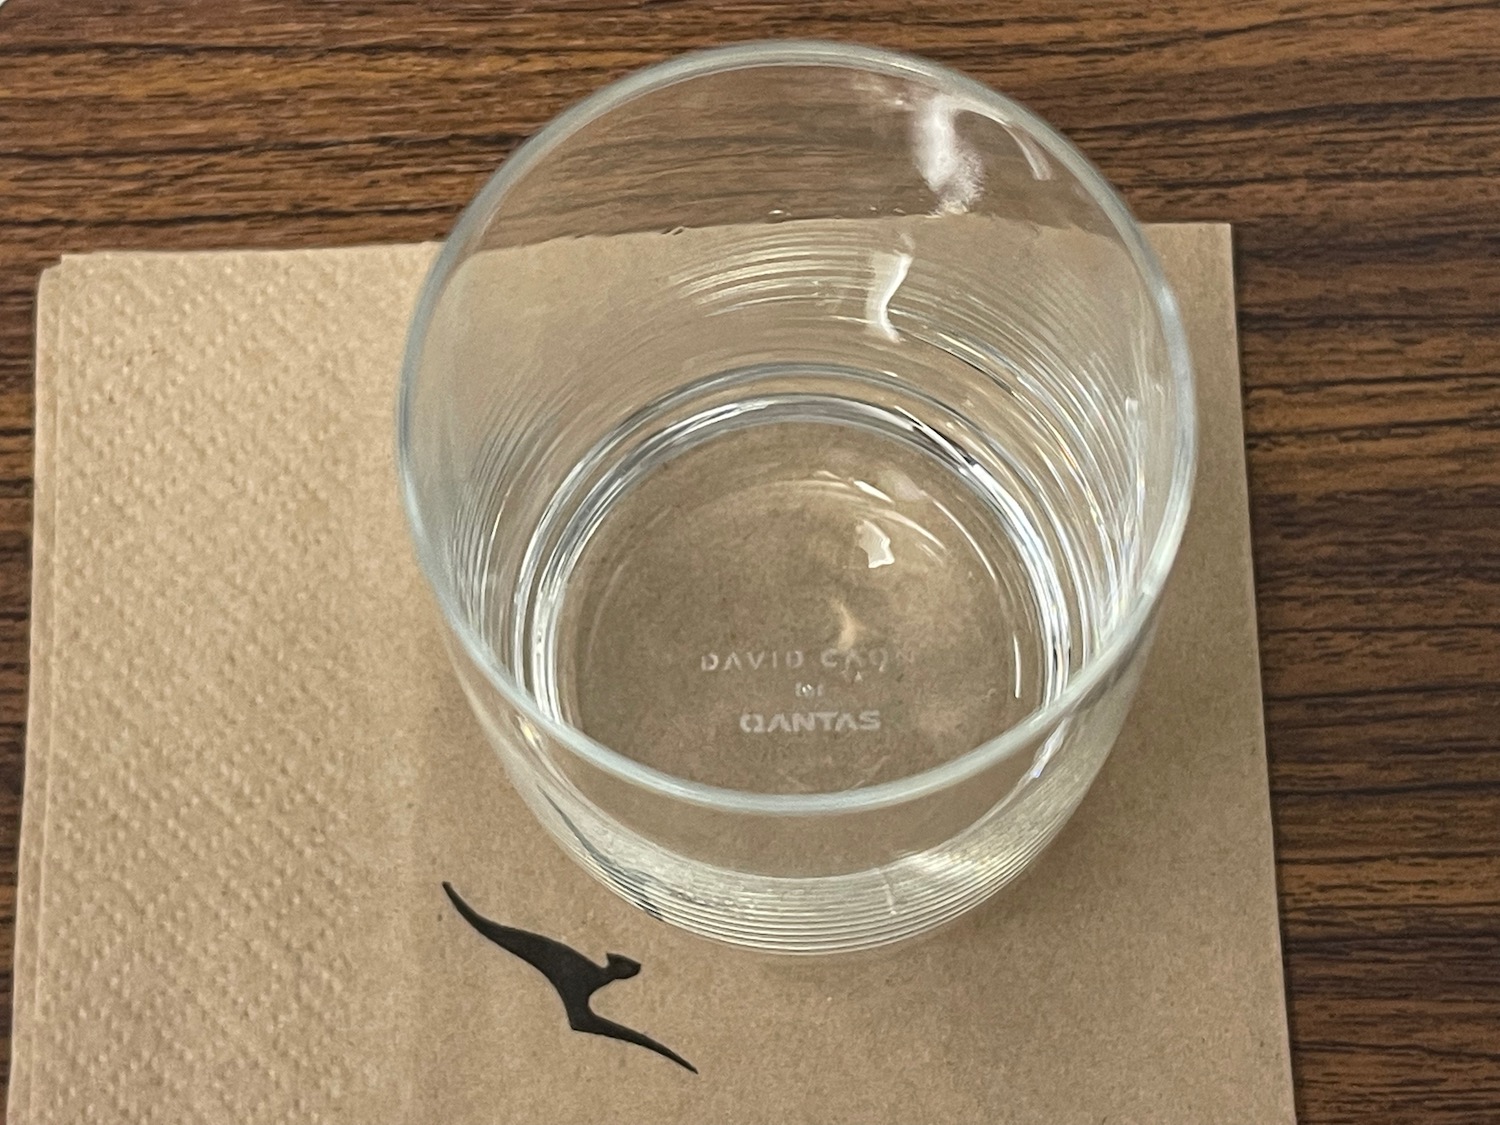 a glass on a napkin